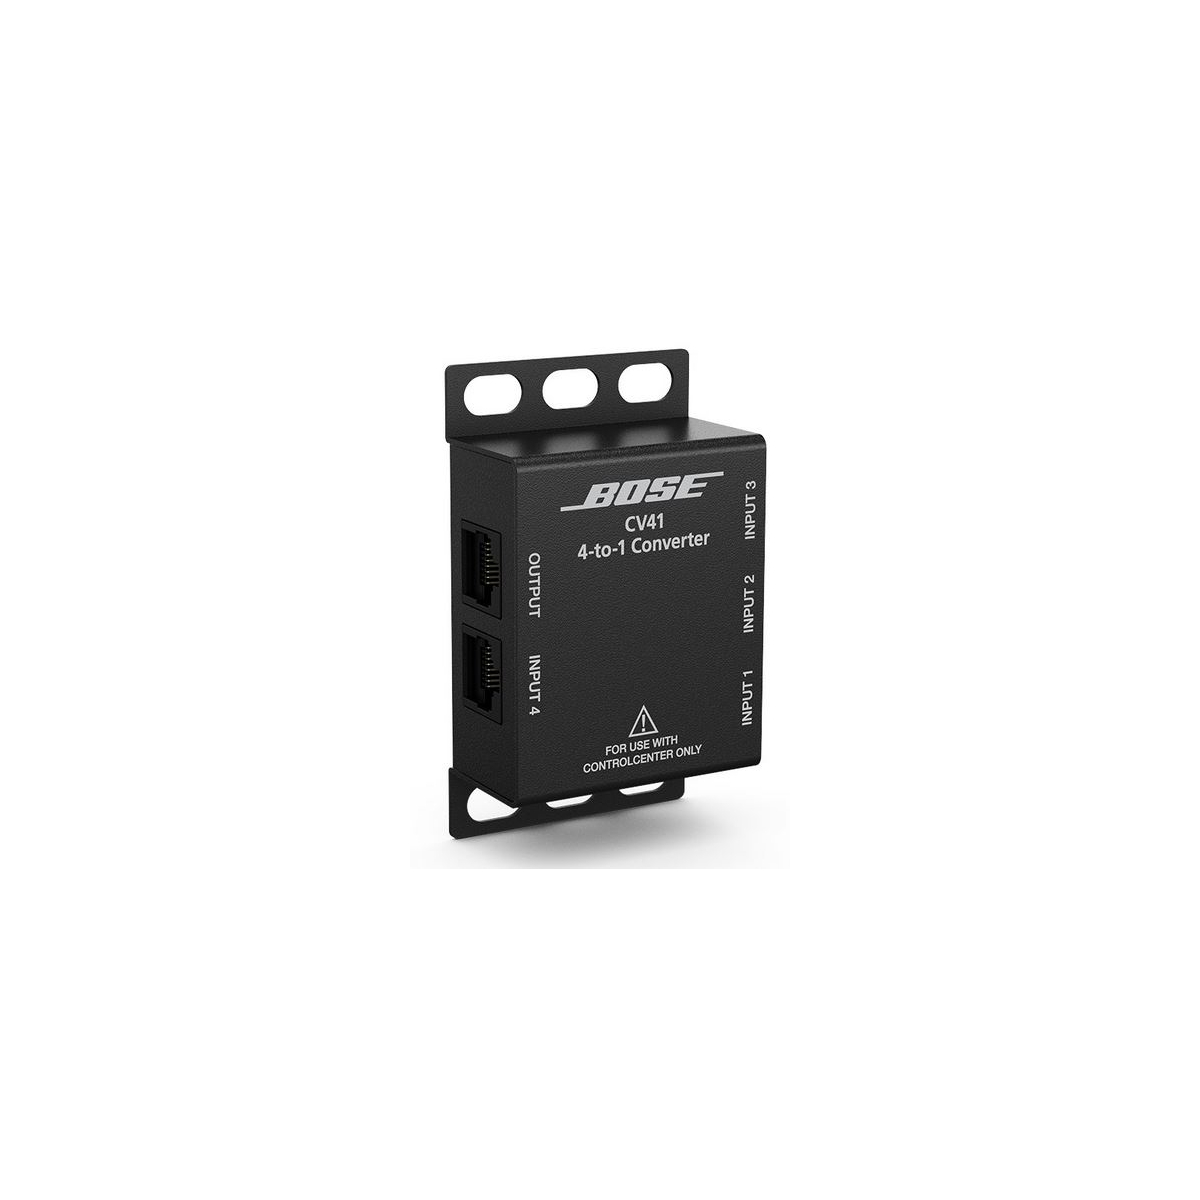 Convertisseurs numériques - Bose Professional - ControlCenter CV41 4-to-1